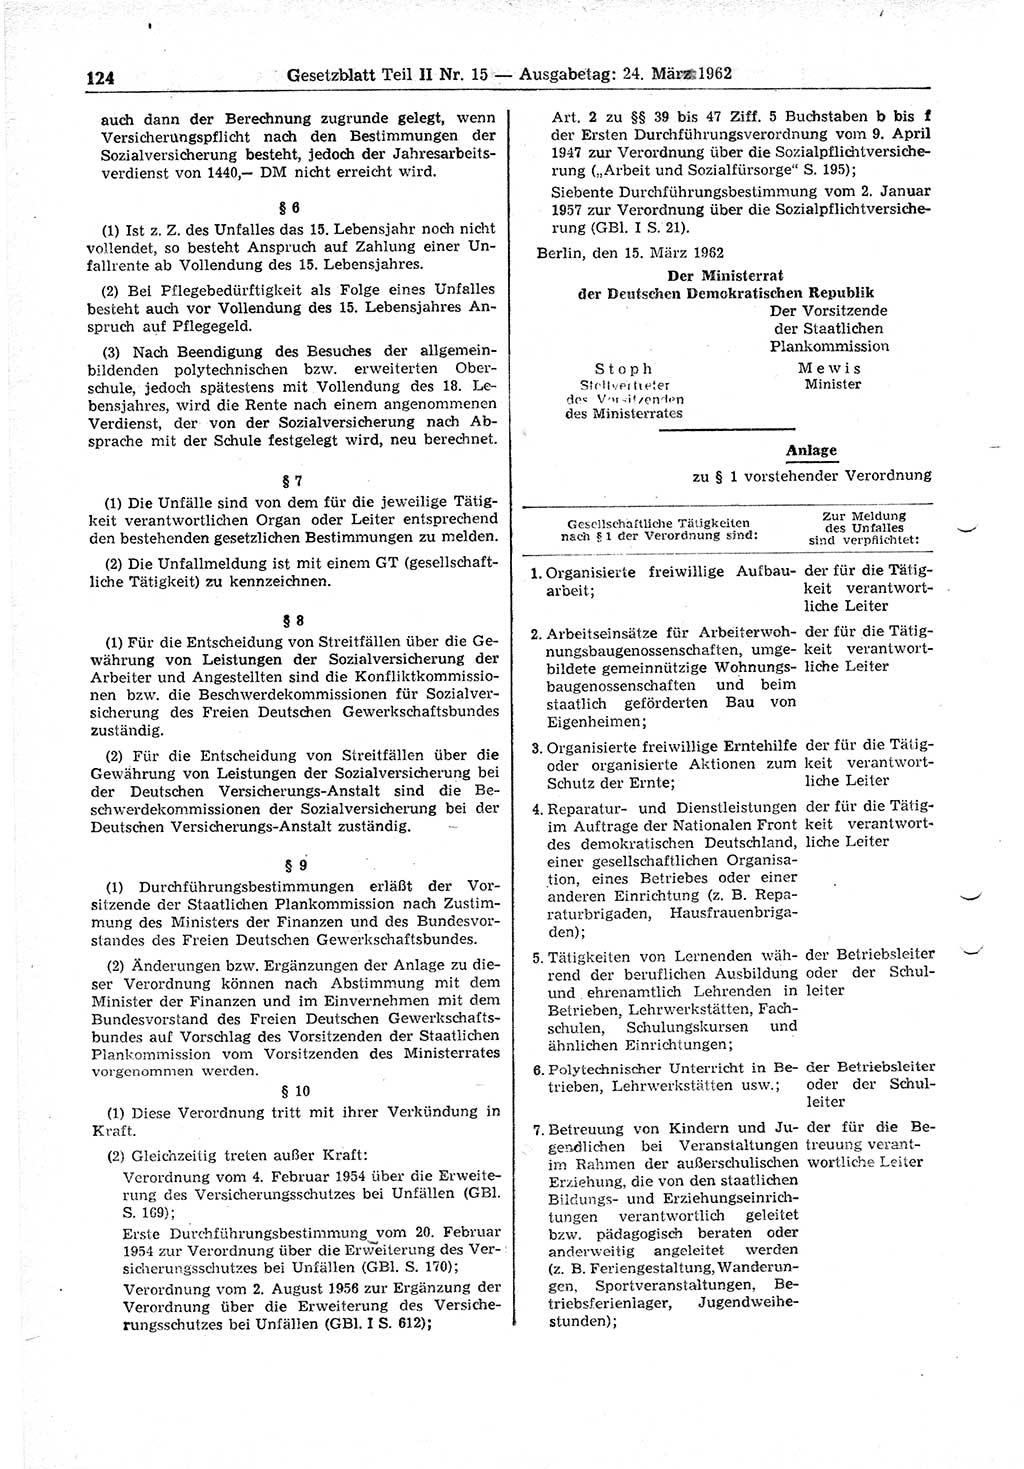 Gesetzblatt (GBl.) der Deutschen Demokratischen Republik (DDR) Teil ⅠⅠ 1962, Seite 124 (GBl. DDR ⅠⅠ 1962, S. 124)